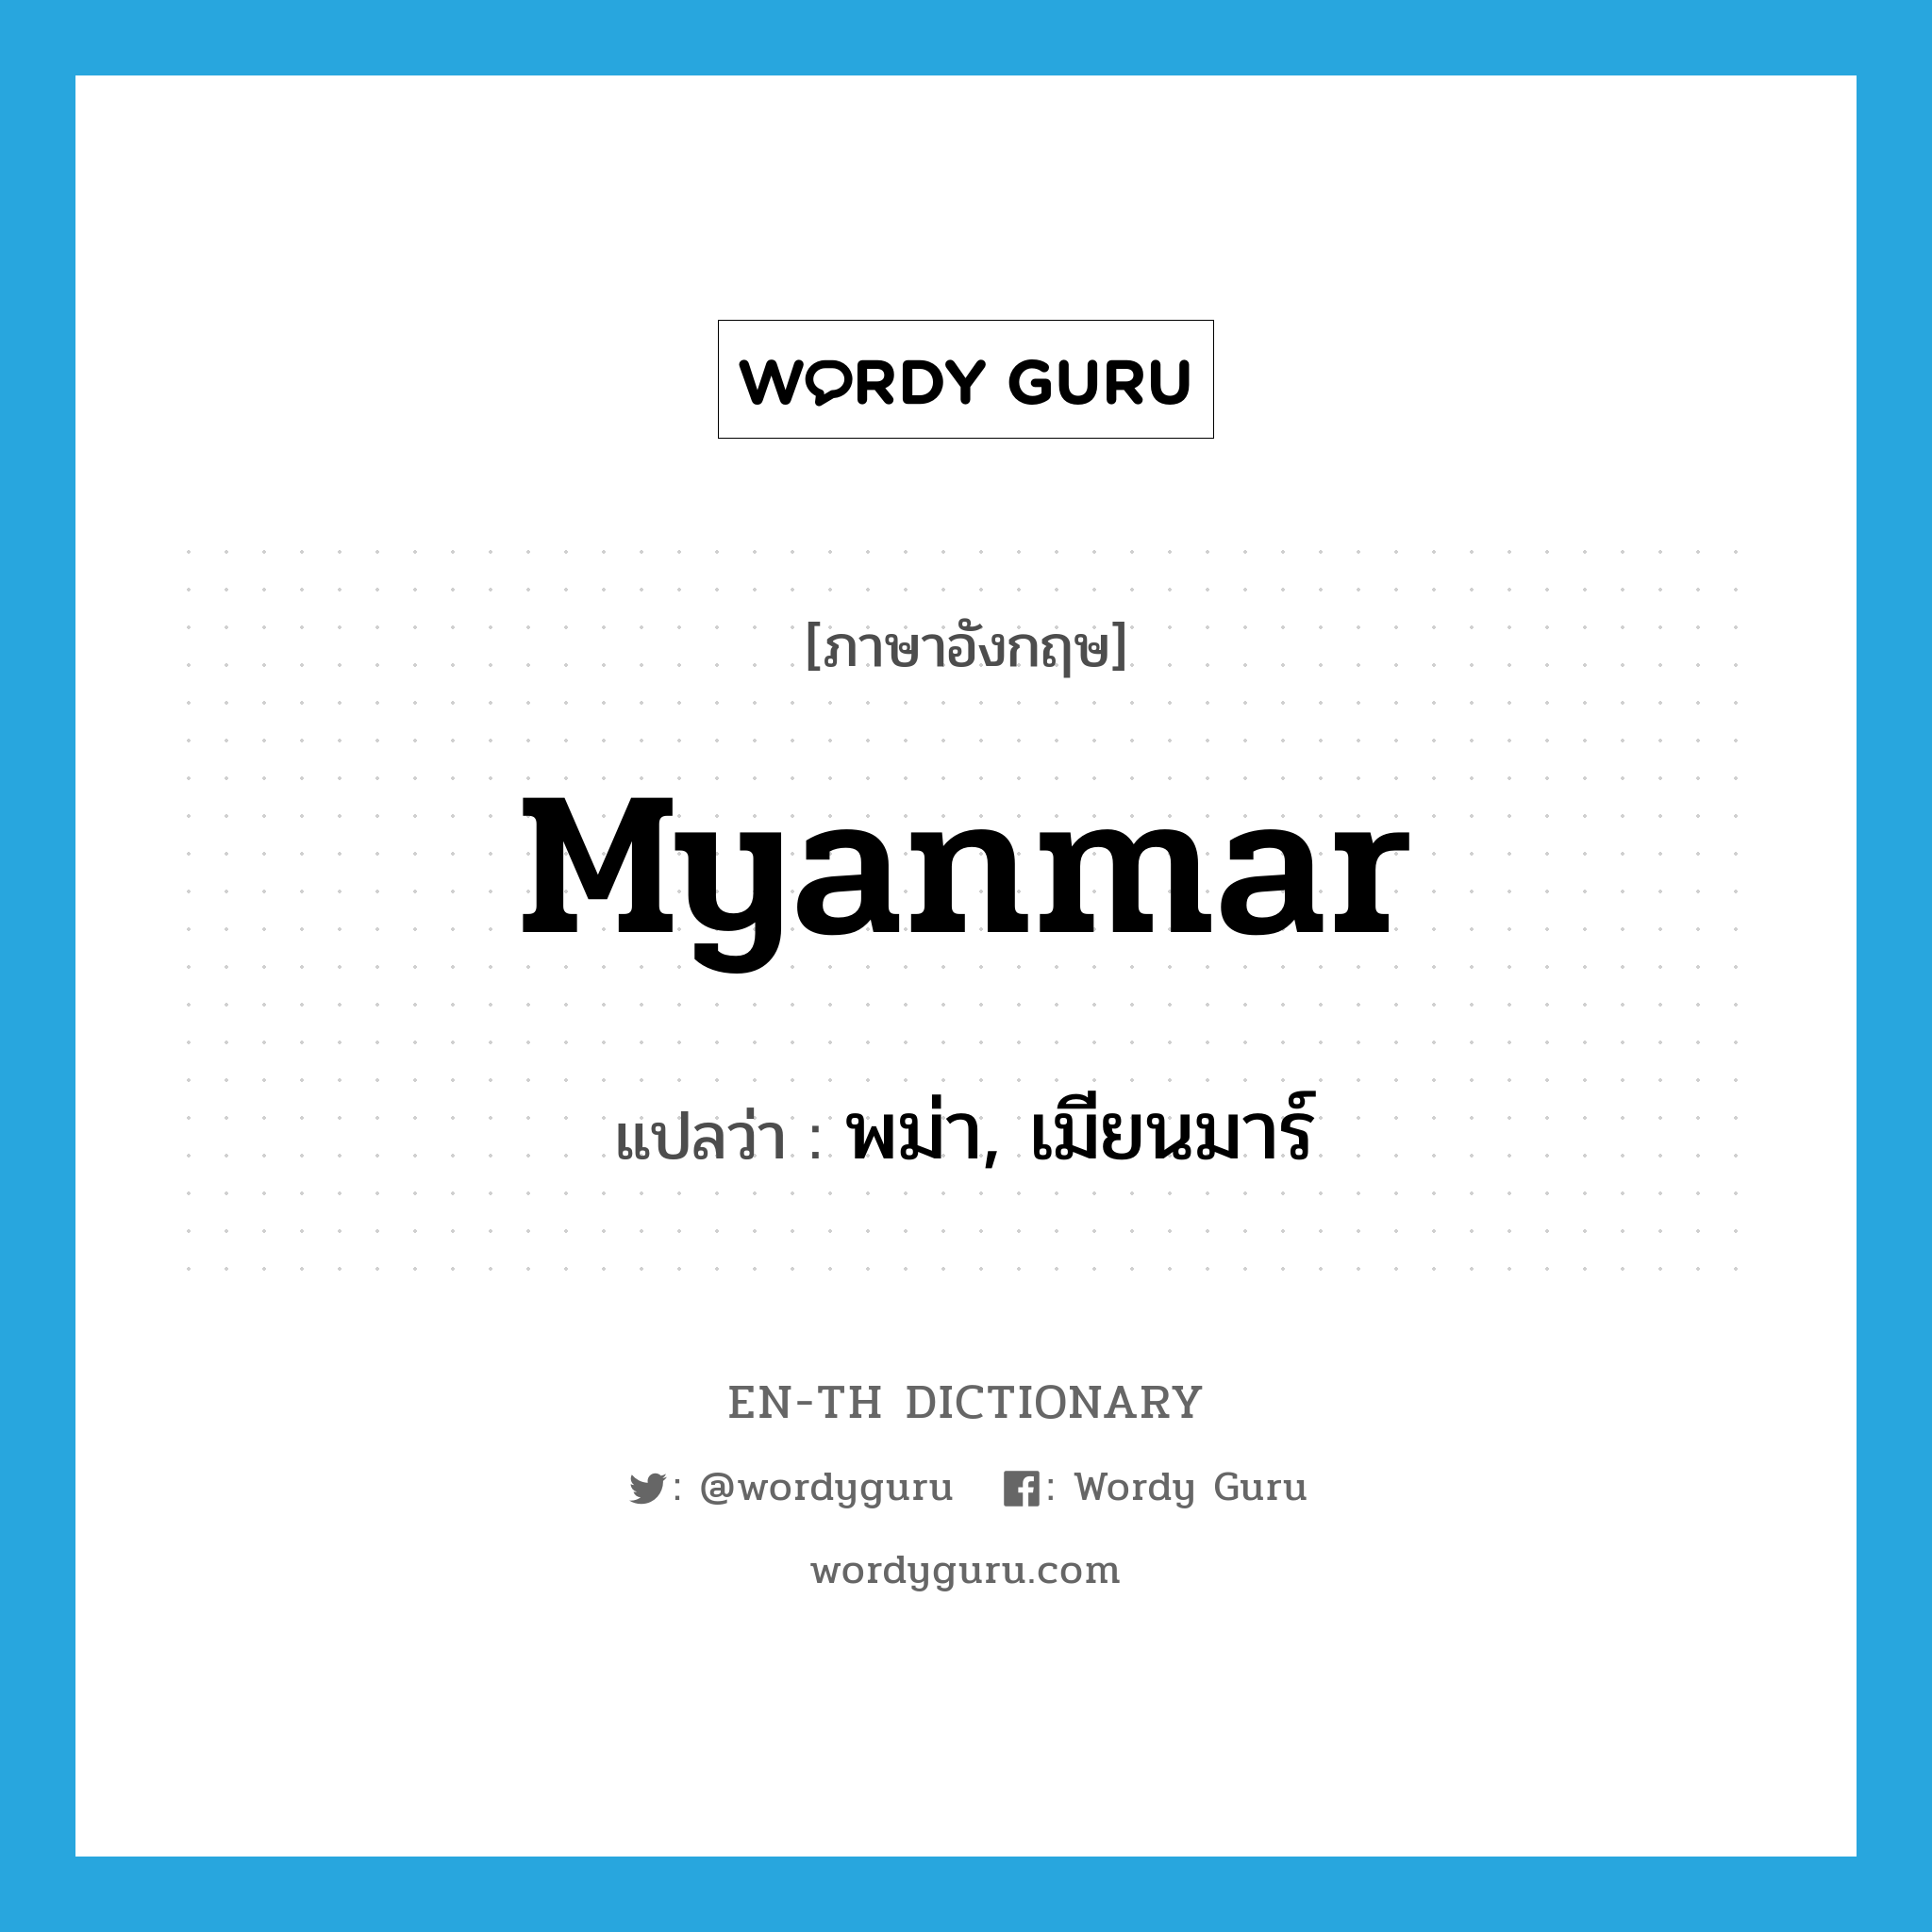 พม่า, เมียนมาร์ ภาษาอังกฤษ?, คำศัพท์ภาษาอังกฤษ พม่า, เมียนมาร์ แปลว่า Myanmar ประเภท N หมวด N